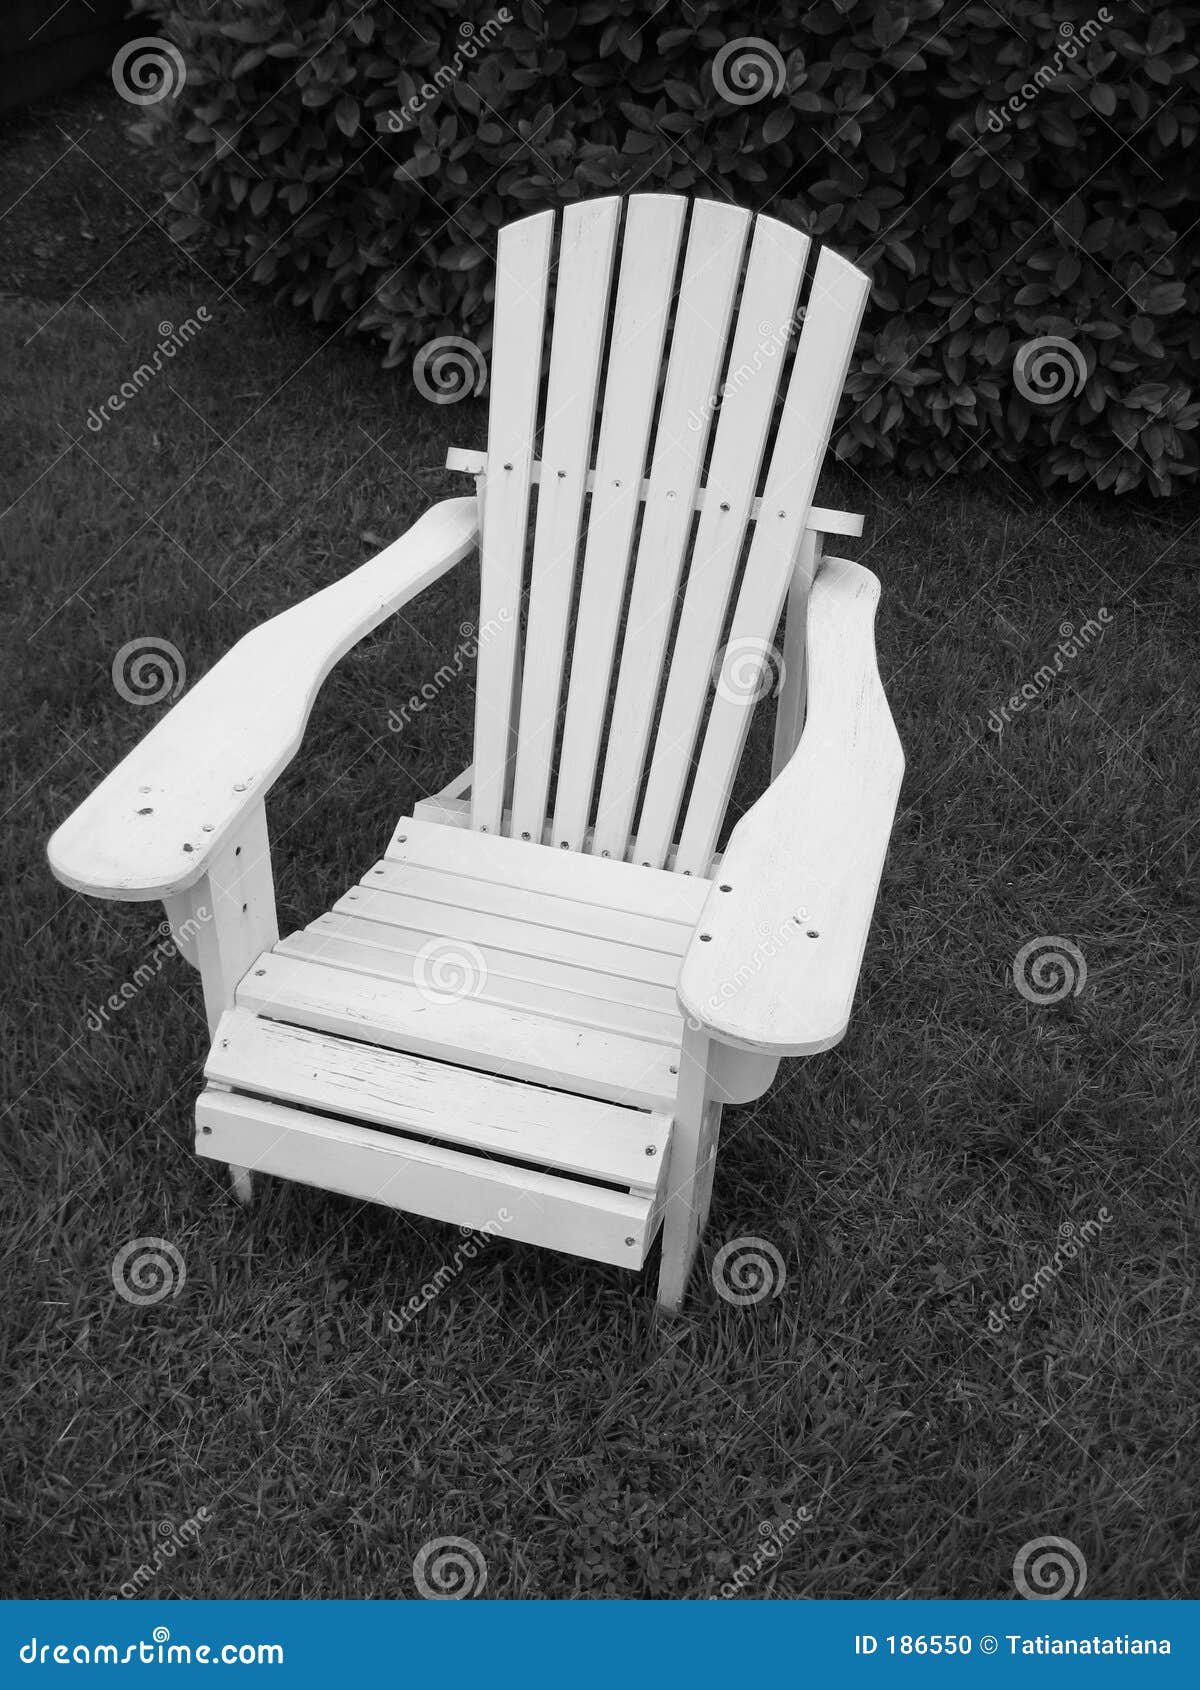 Adirondack Chair__Black And White Stock Photo - Image: 186550